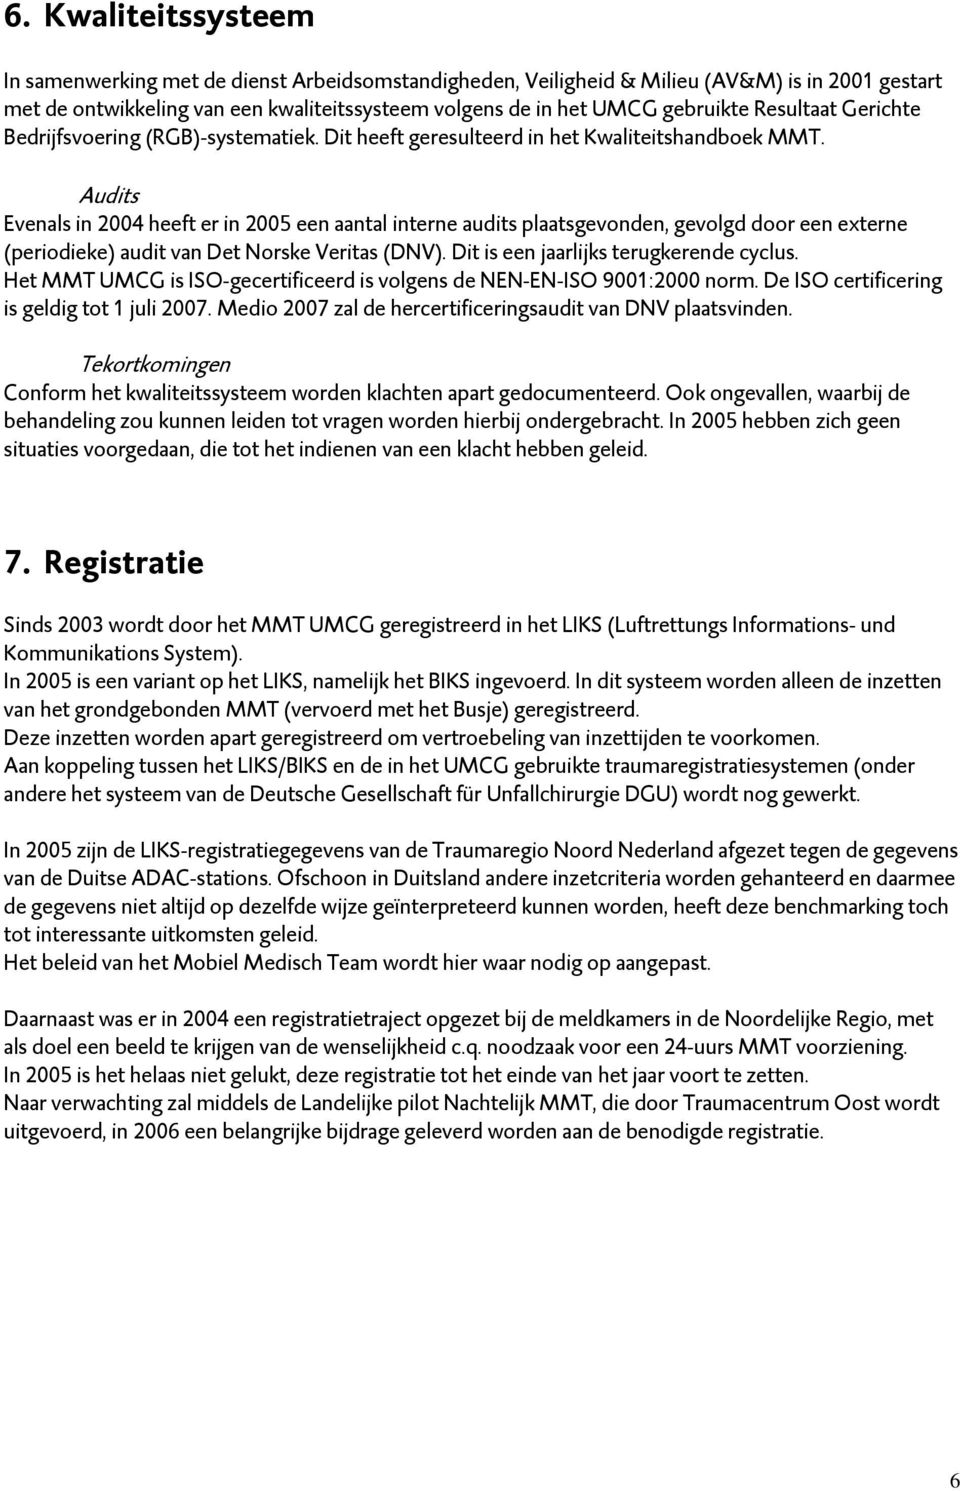 Audits Evenals in 2004 heeft er in 2005 een aantal interne audits plaatsgevonden, gevolgd door een externe (periodieke) audit van Det Norske Veritas (DNV). Dit is een jaarlijks terugkerende cyclus.